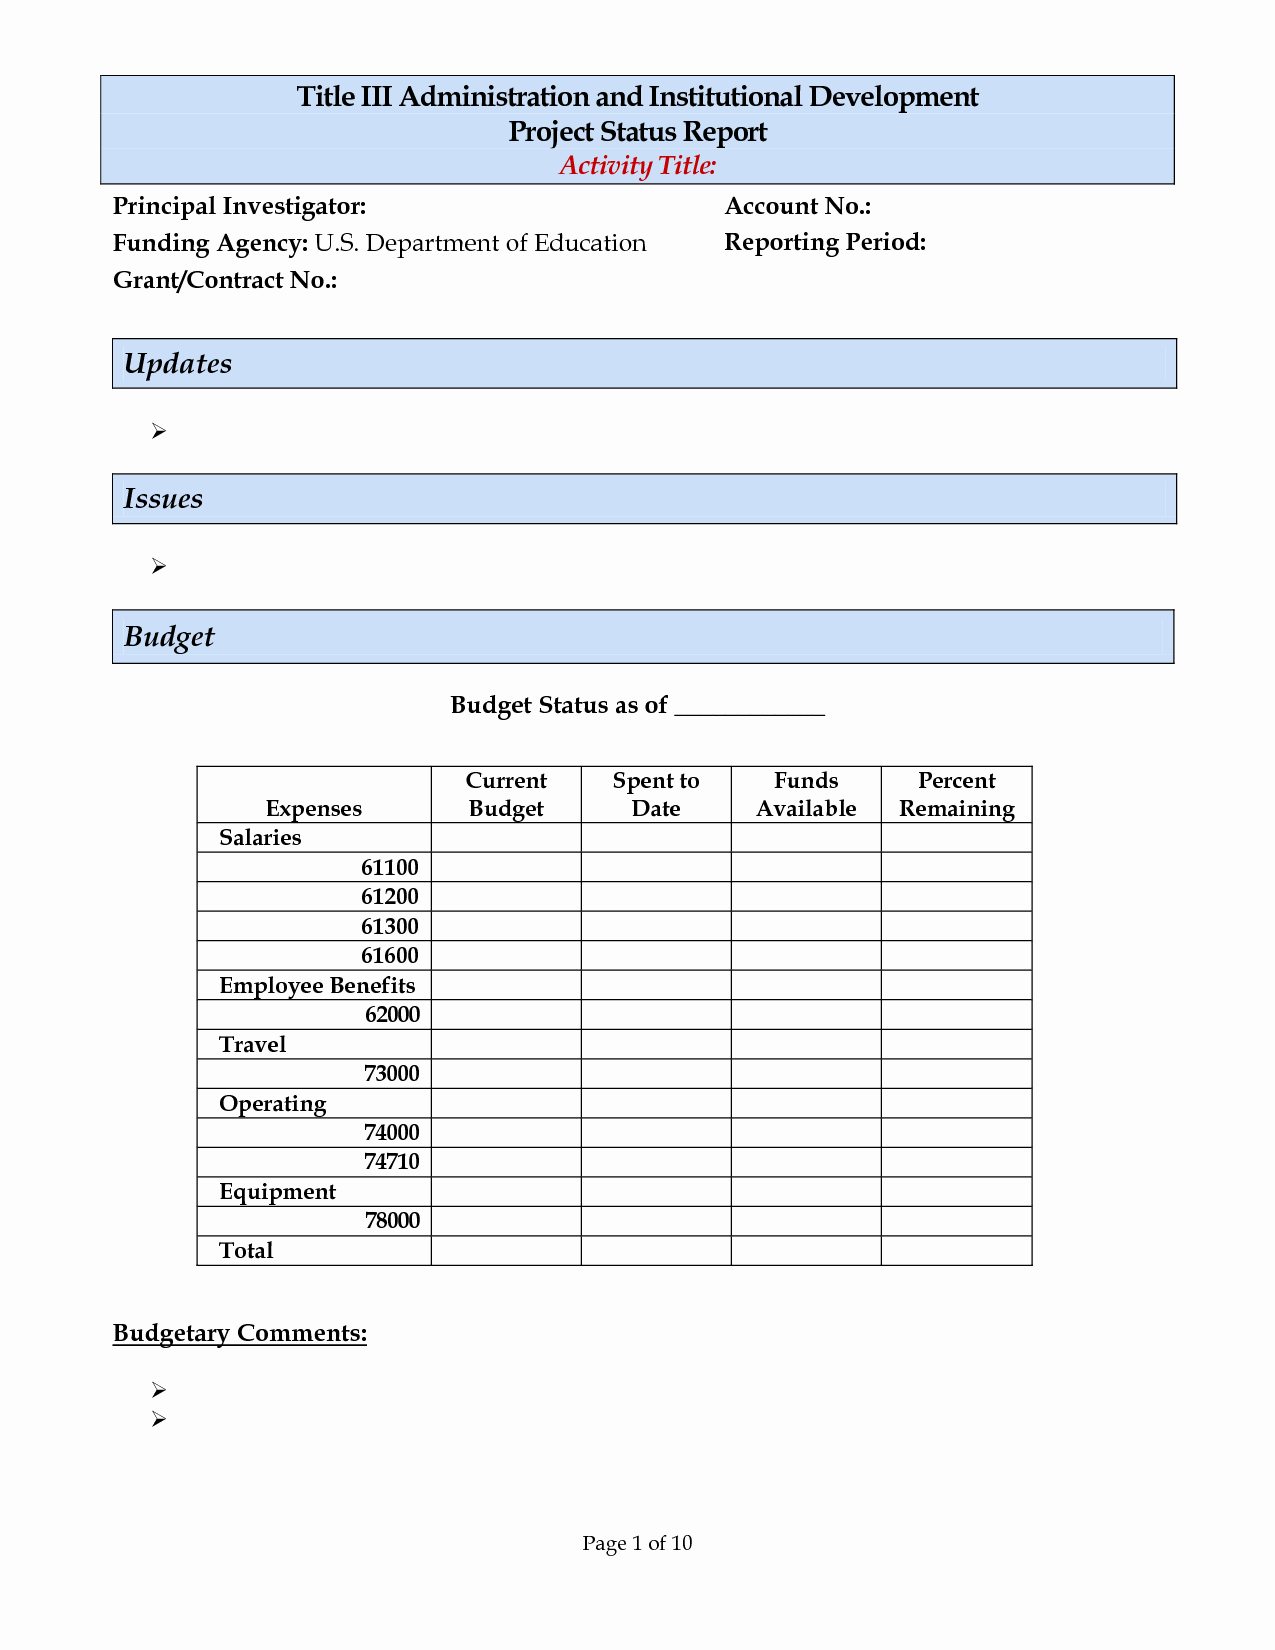 Weekly Status Report Template Excel Elegant Project Daily Status Report Template Excel and Monthly